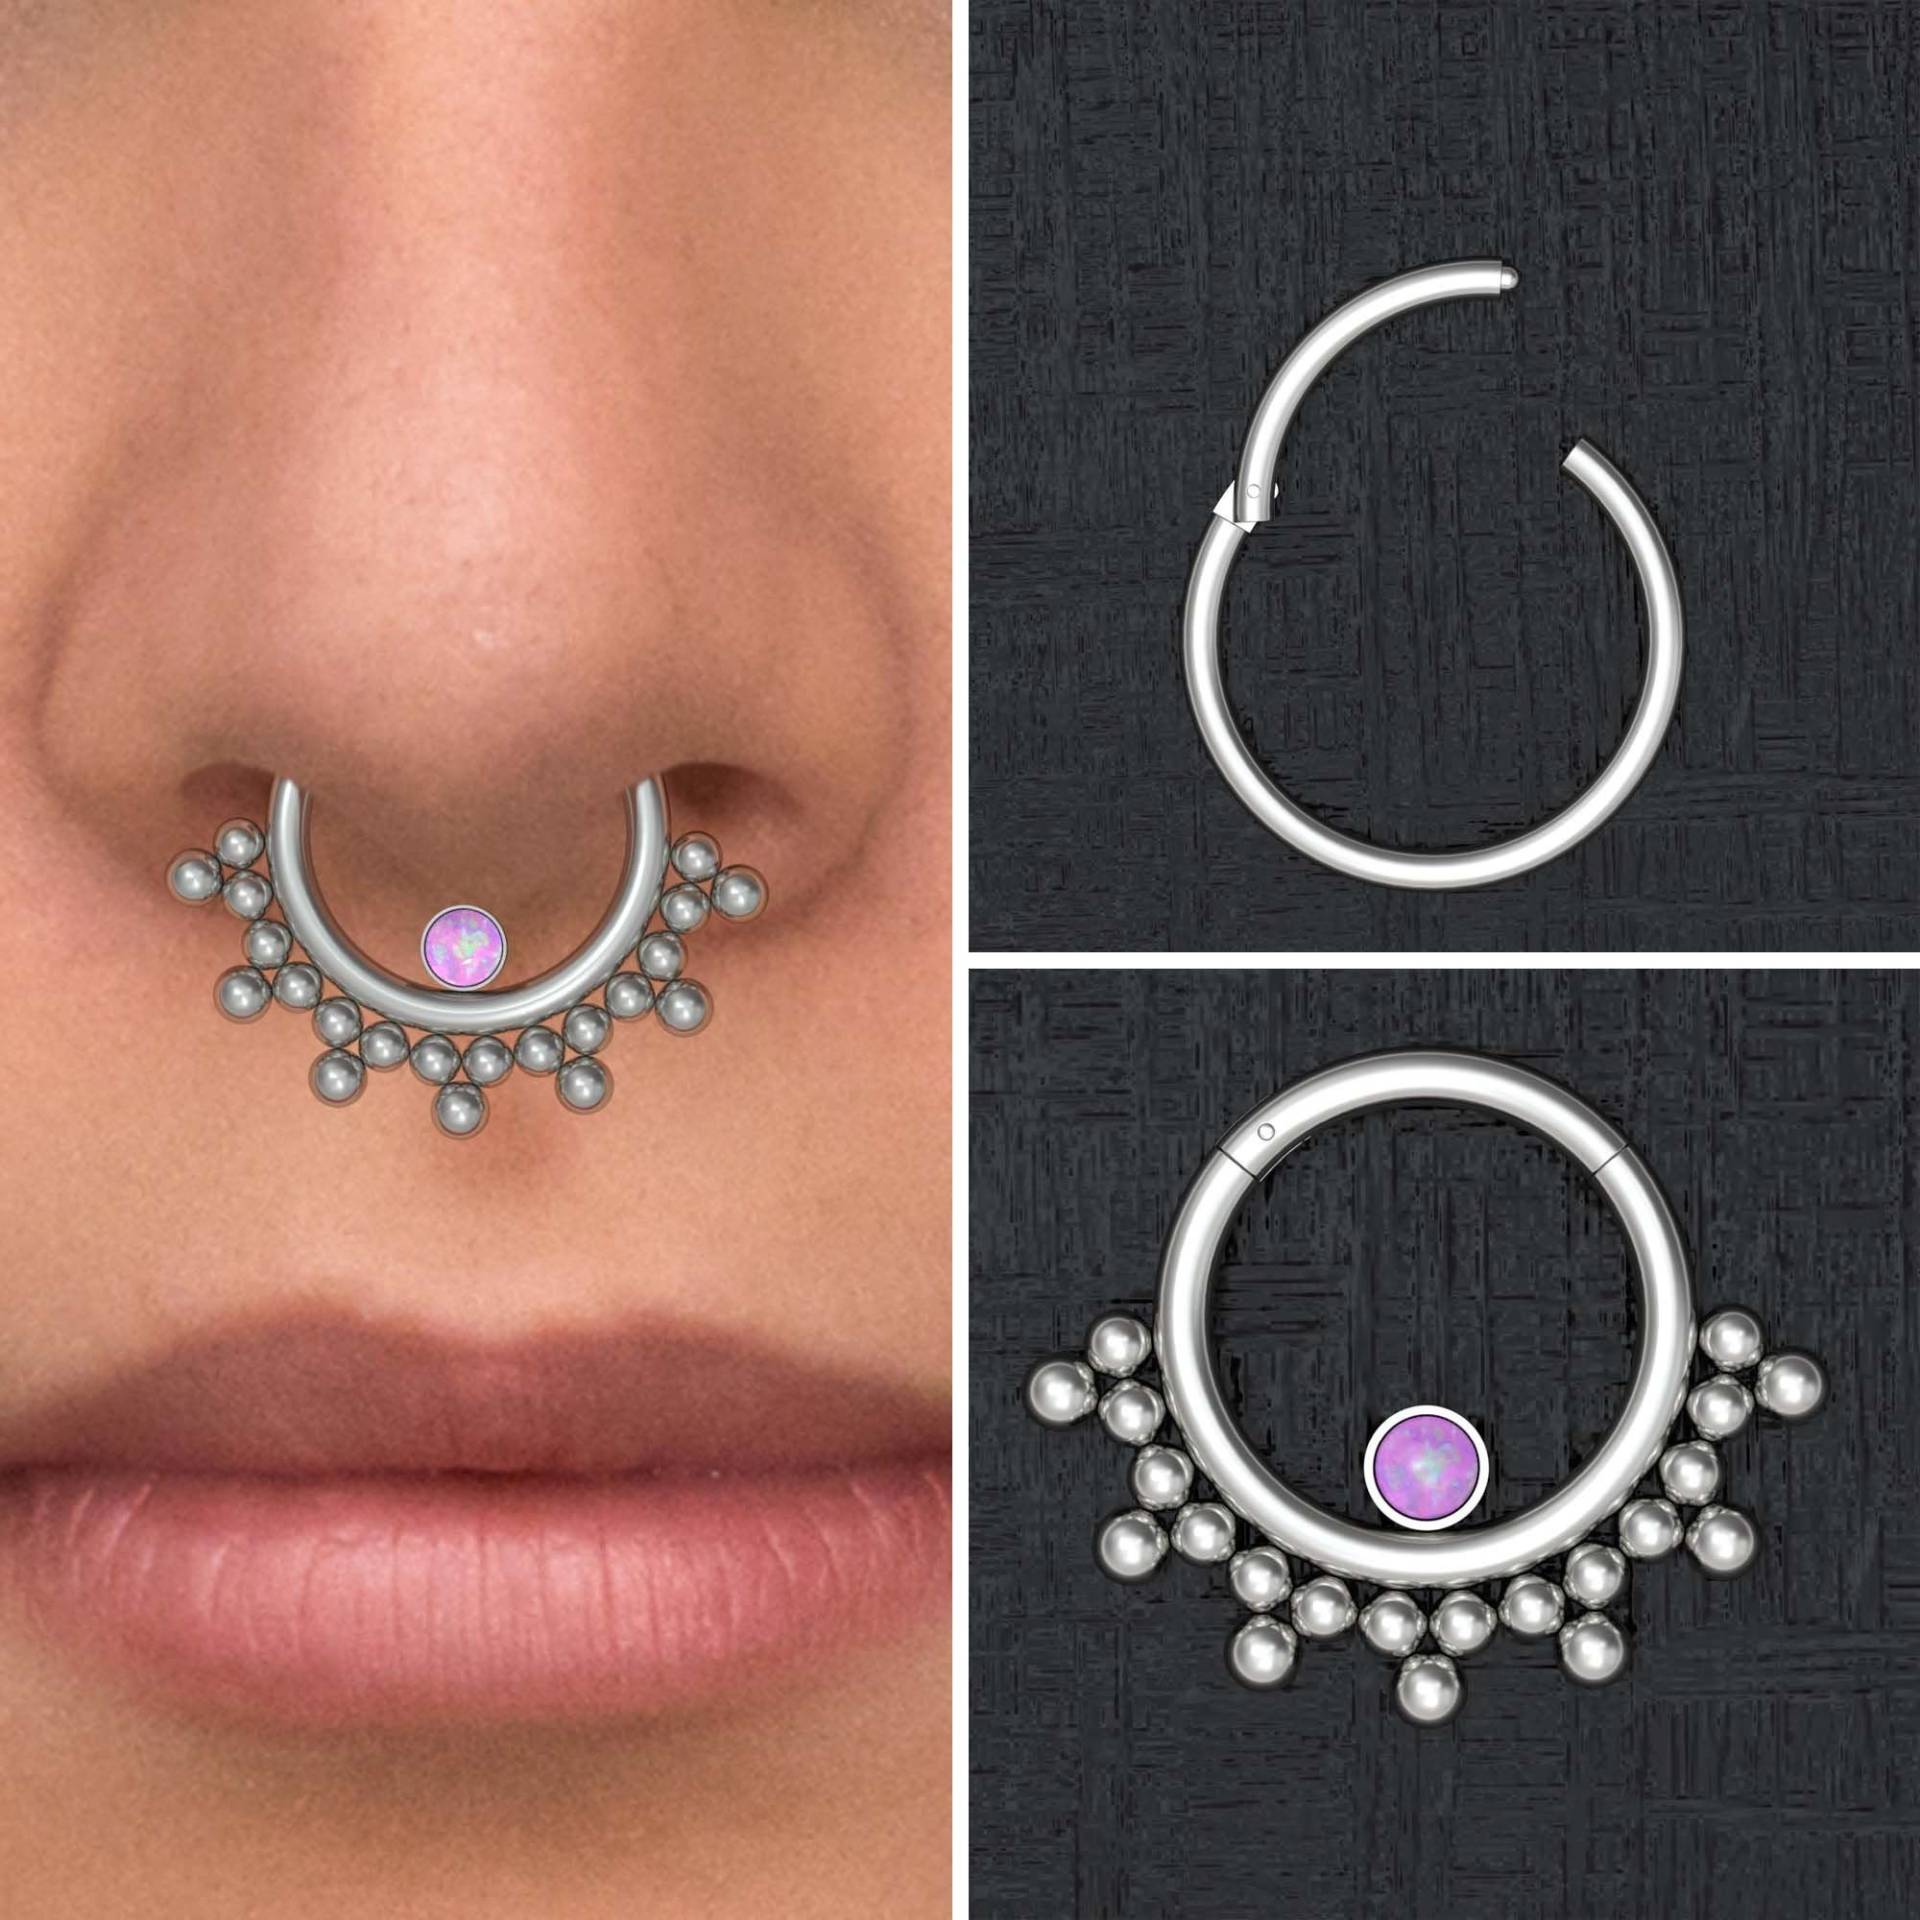 Titan Septum Ring, Opal Daith Ohrring Implant Grade, Schmuck, Hoop, Piercing, Clicker von TitaniumFashion